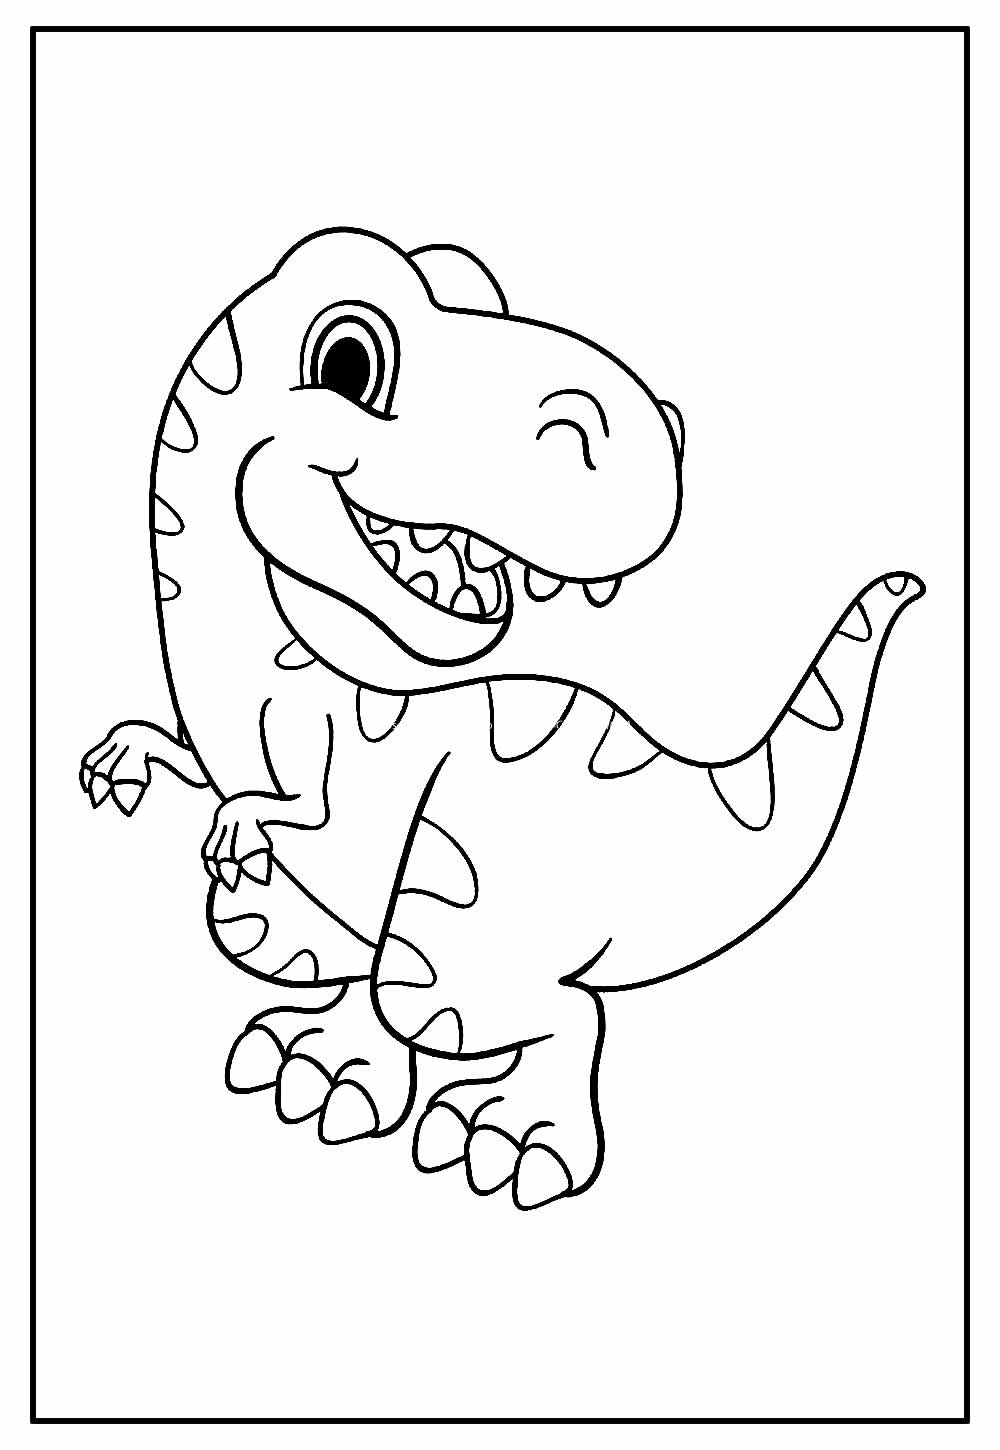 Dinossauro para Colorir – 47 Imagens Divertidas p/ Imprimir Grátis!   Páginas para colorir dinossauro, Páginas de colorir com animais, Páginas  para colorir para adultos